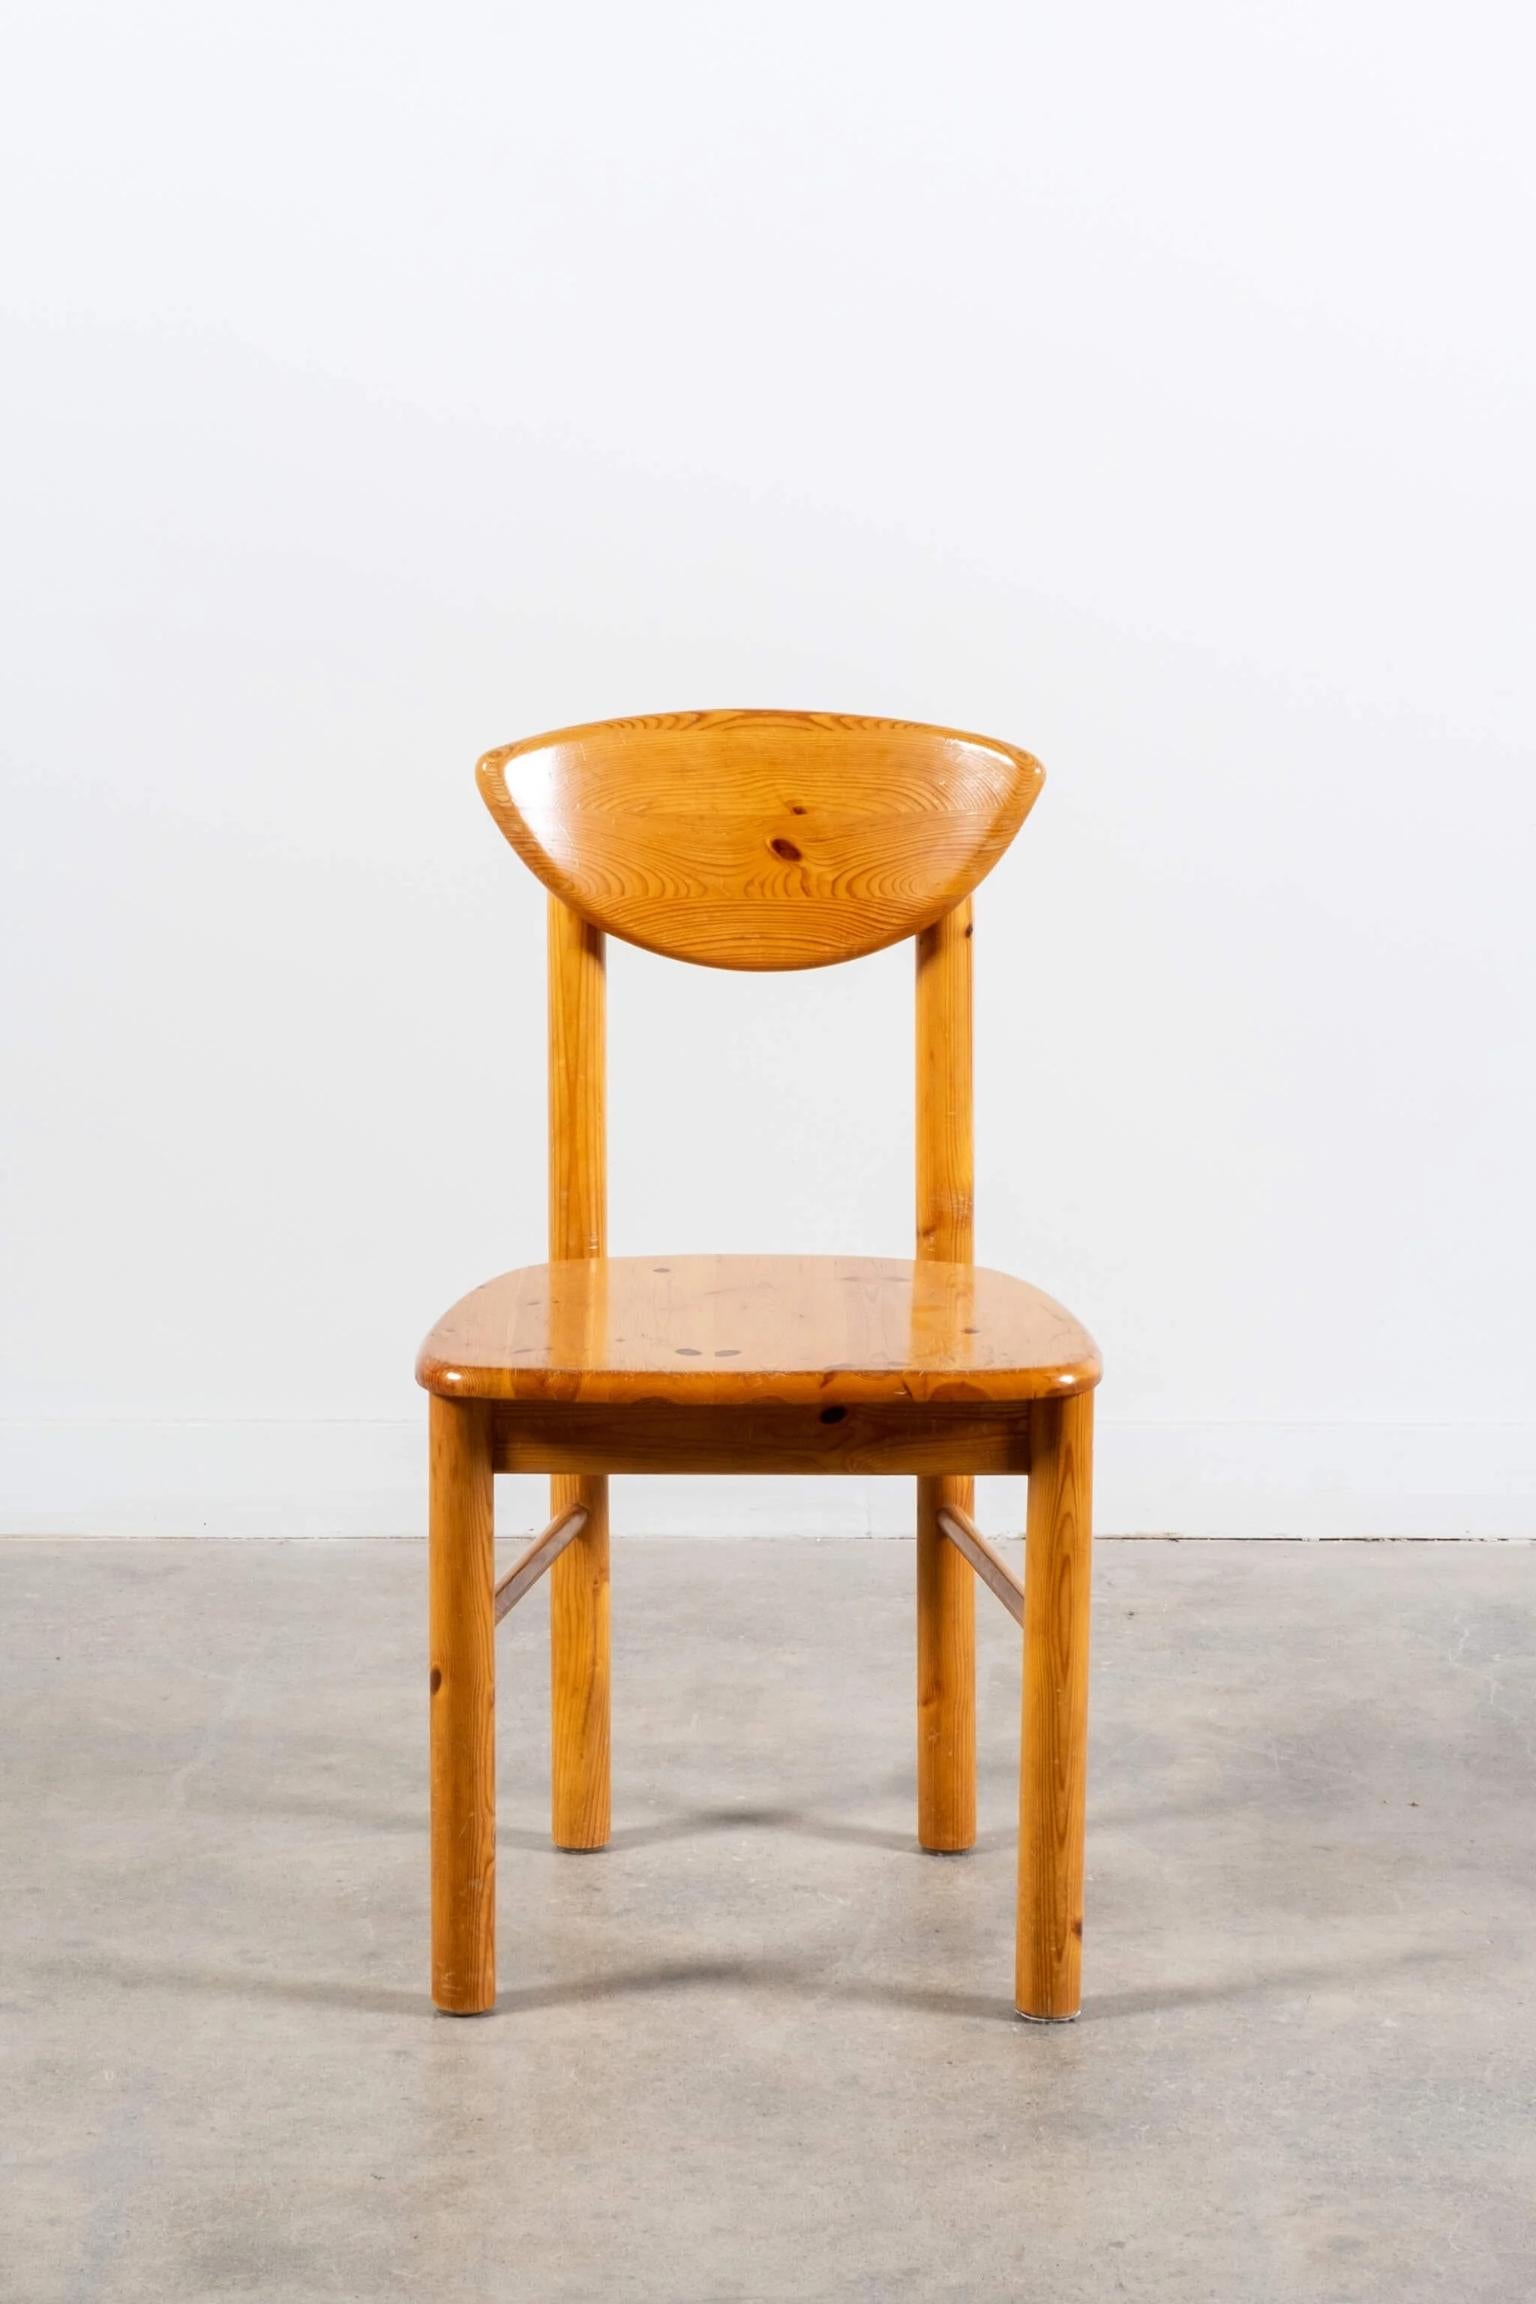 Die Stühle aus dänischem Kiefernholz stehen ganz oben auf der Liste der Designer und wurden kürzlich in einer Ausgabe des Architectural Digest vorgestellt. Sie bieten eine wunderbare Kombination aus skulpturalen und organischen Elementen.
Die solide